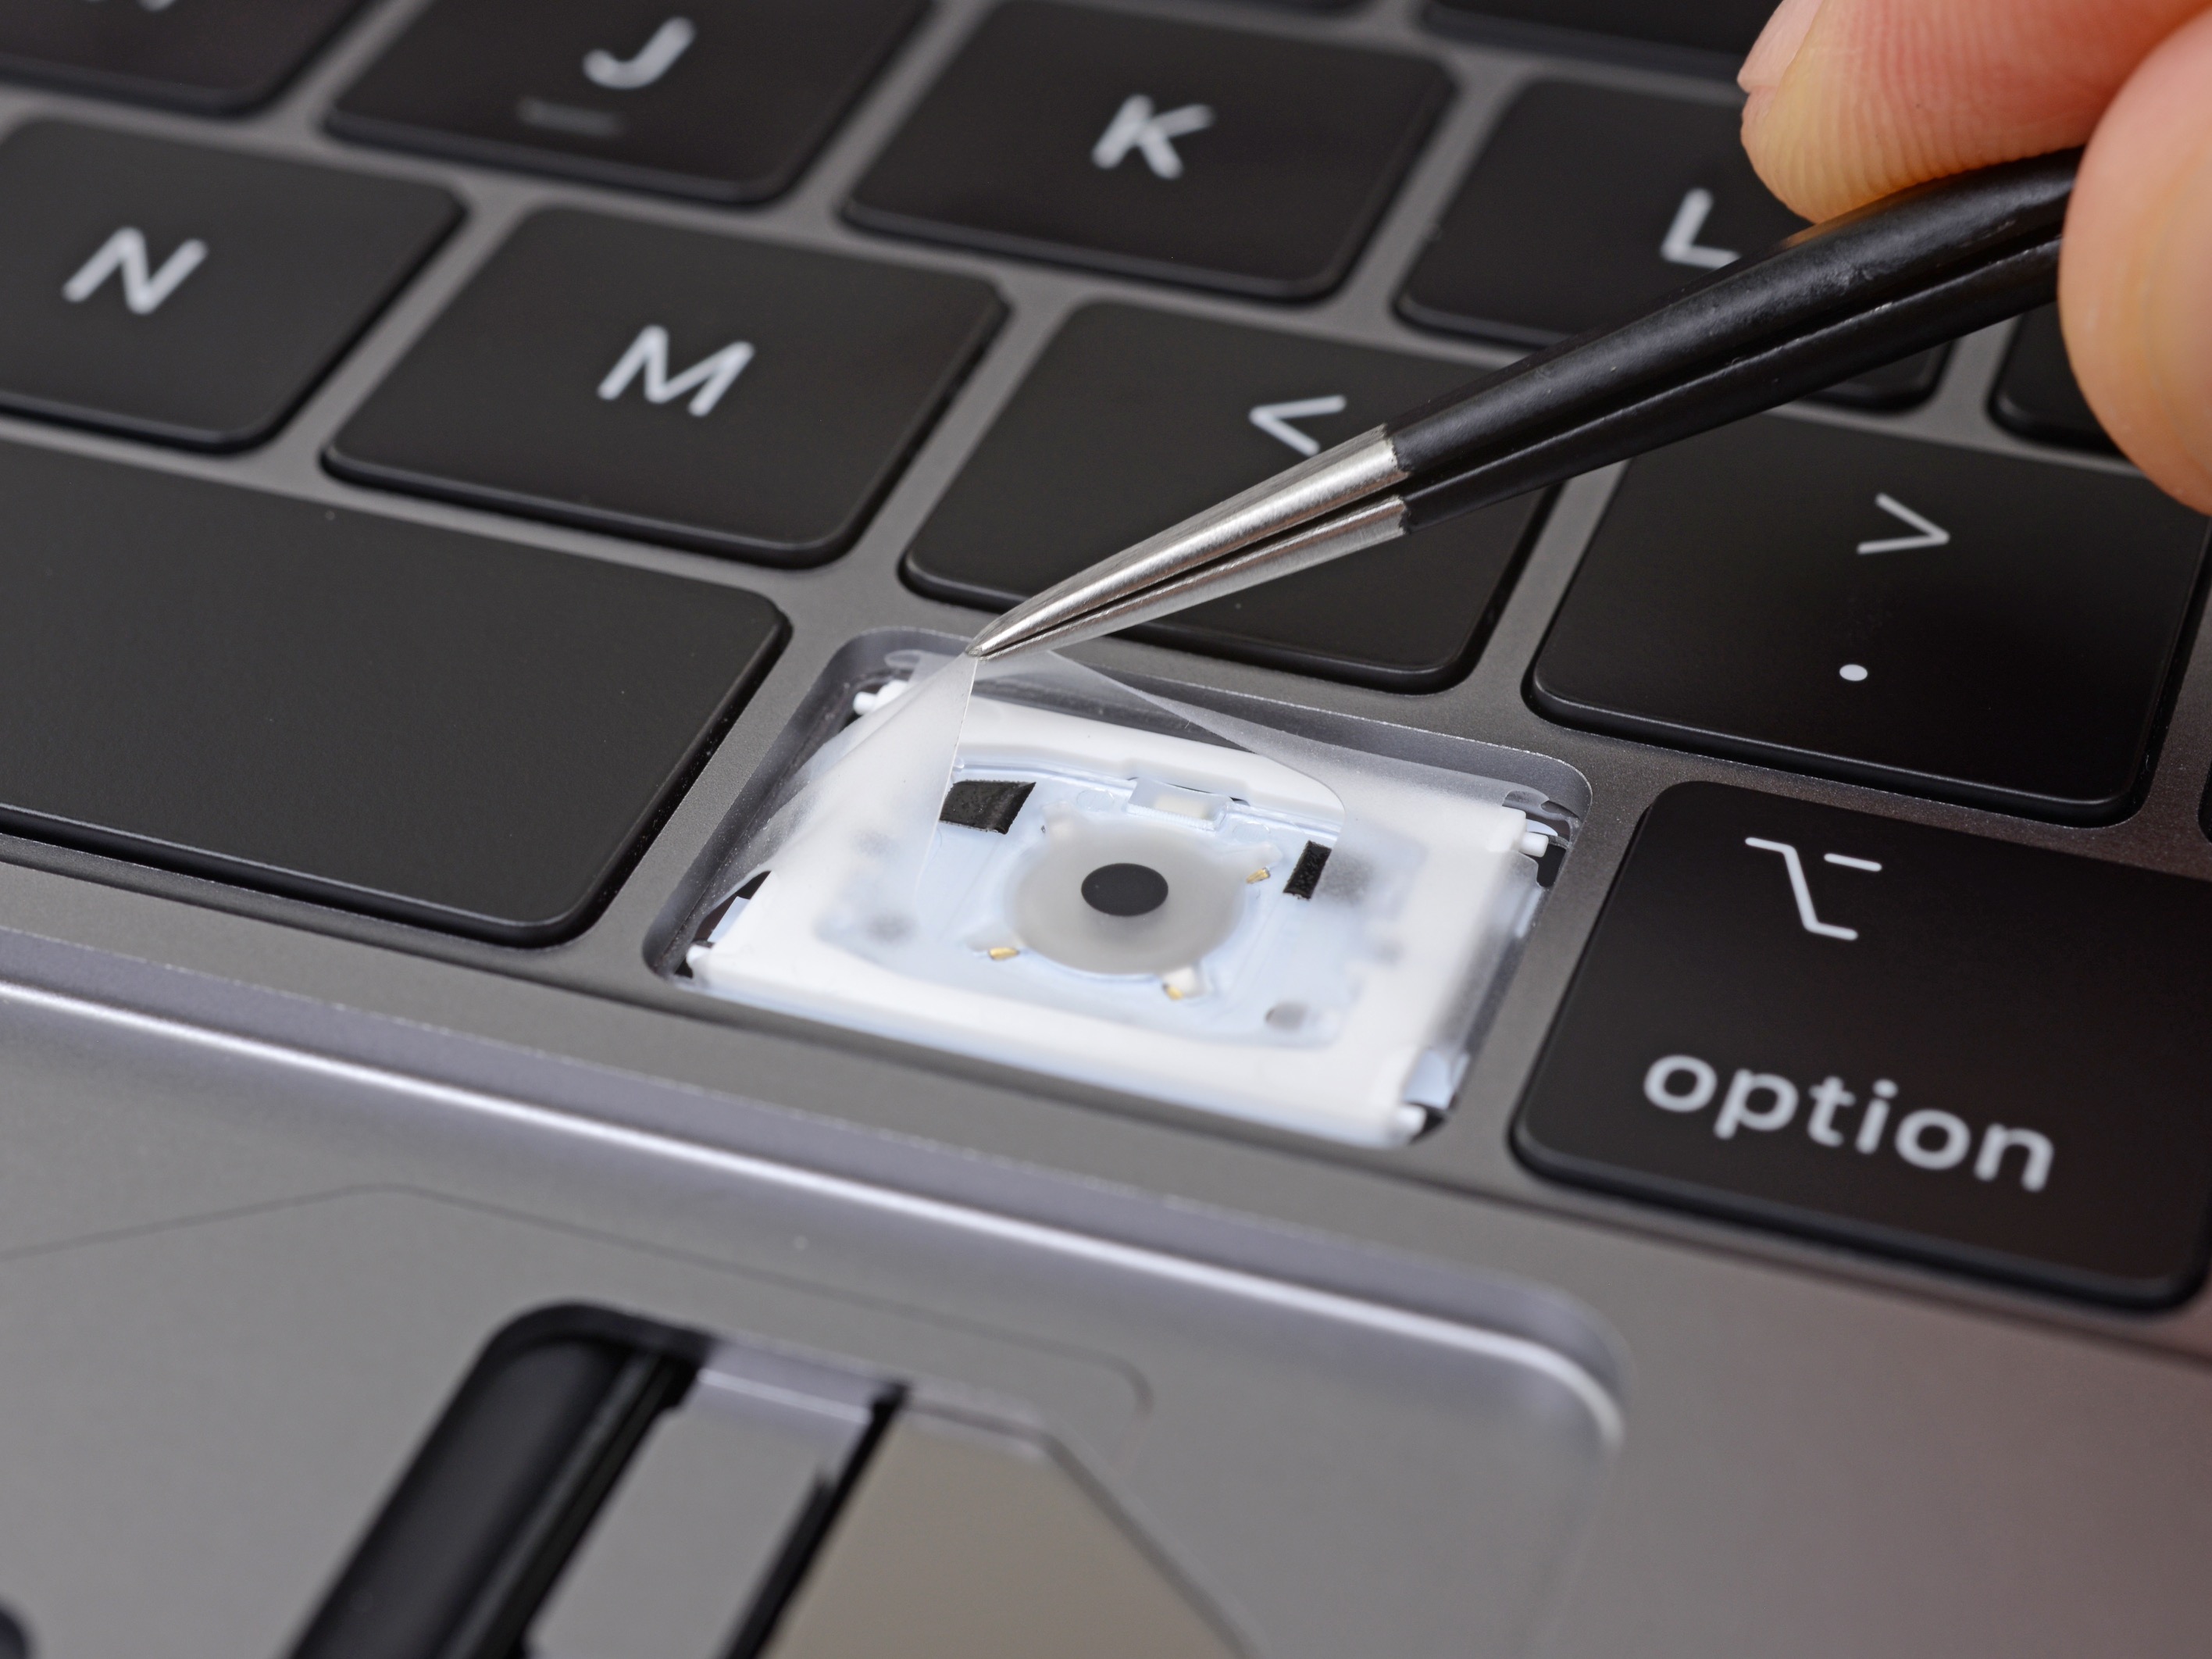 MacBook Pro 16-inch mới có thể sẽ được ra mắt trong tuần này